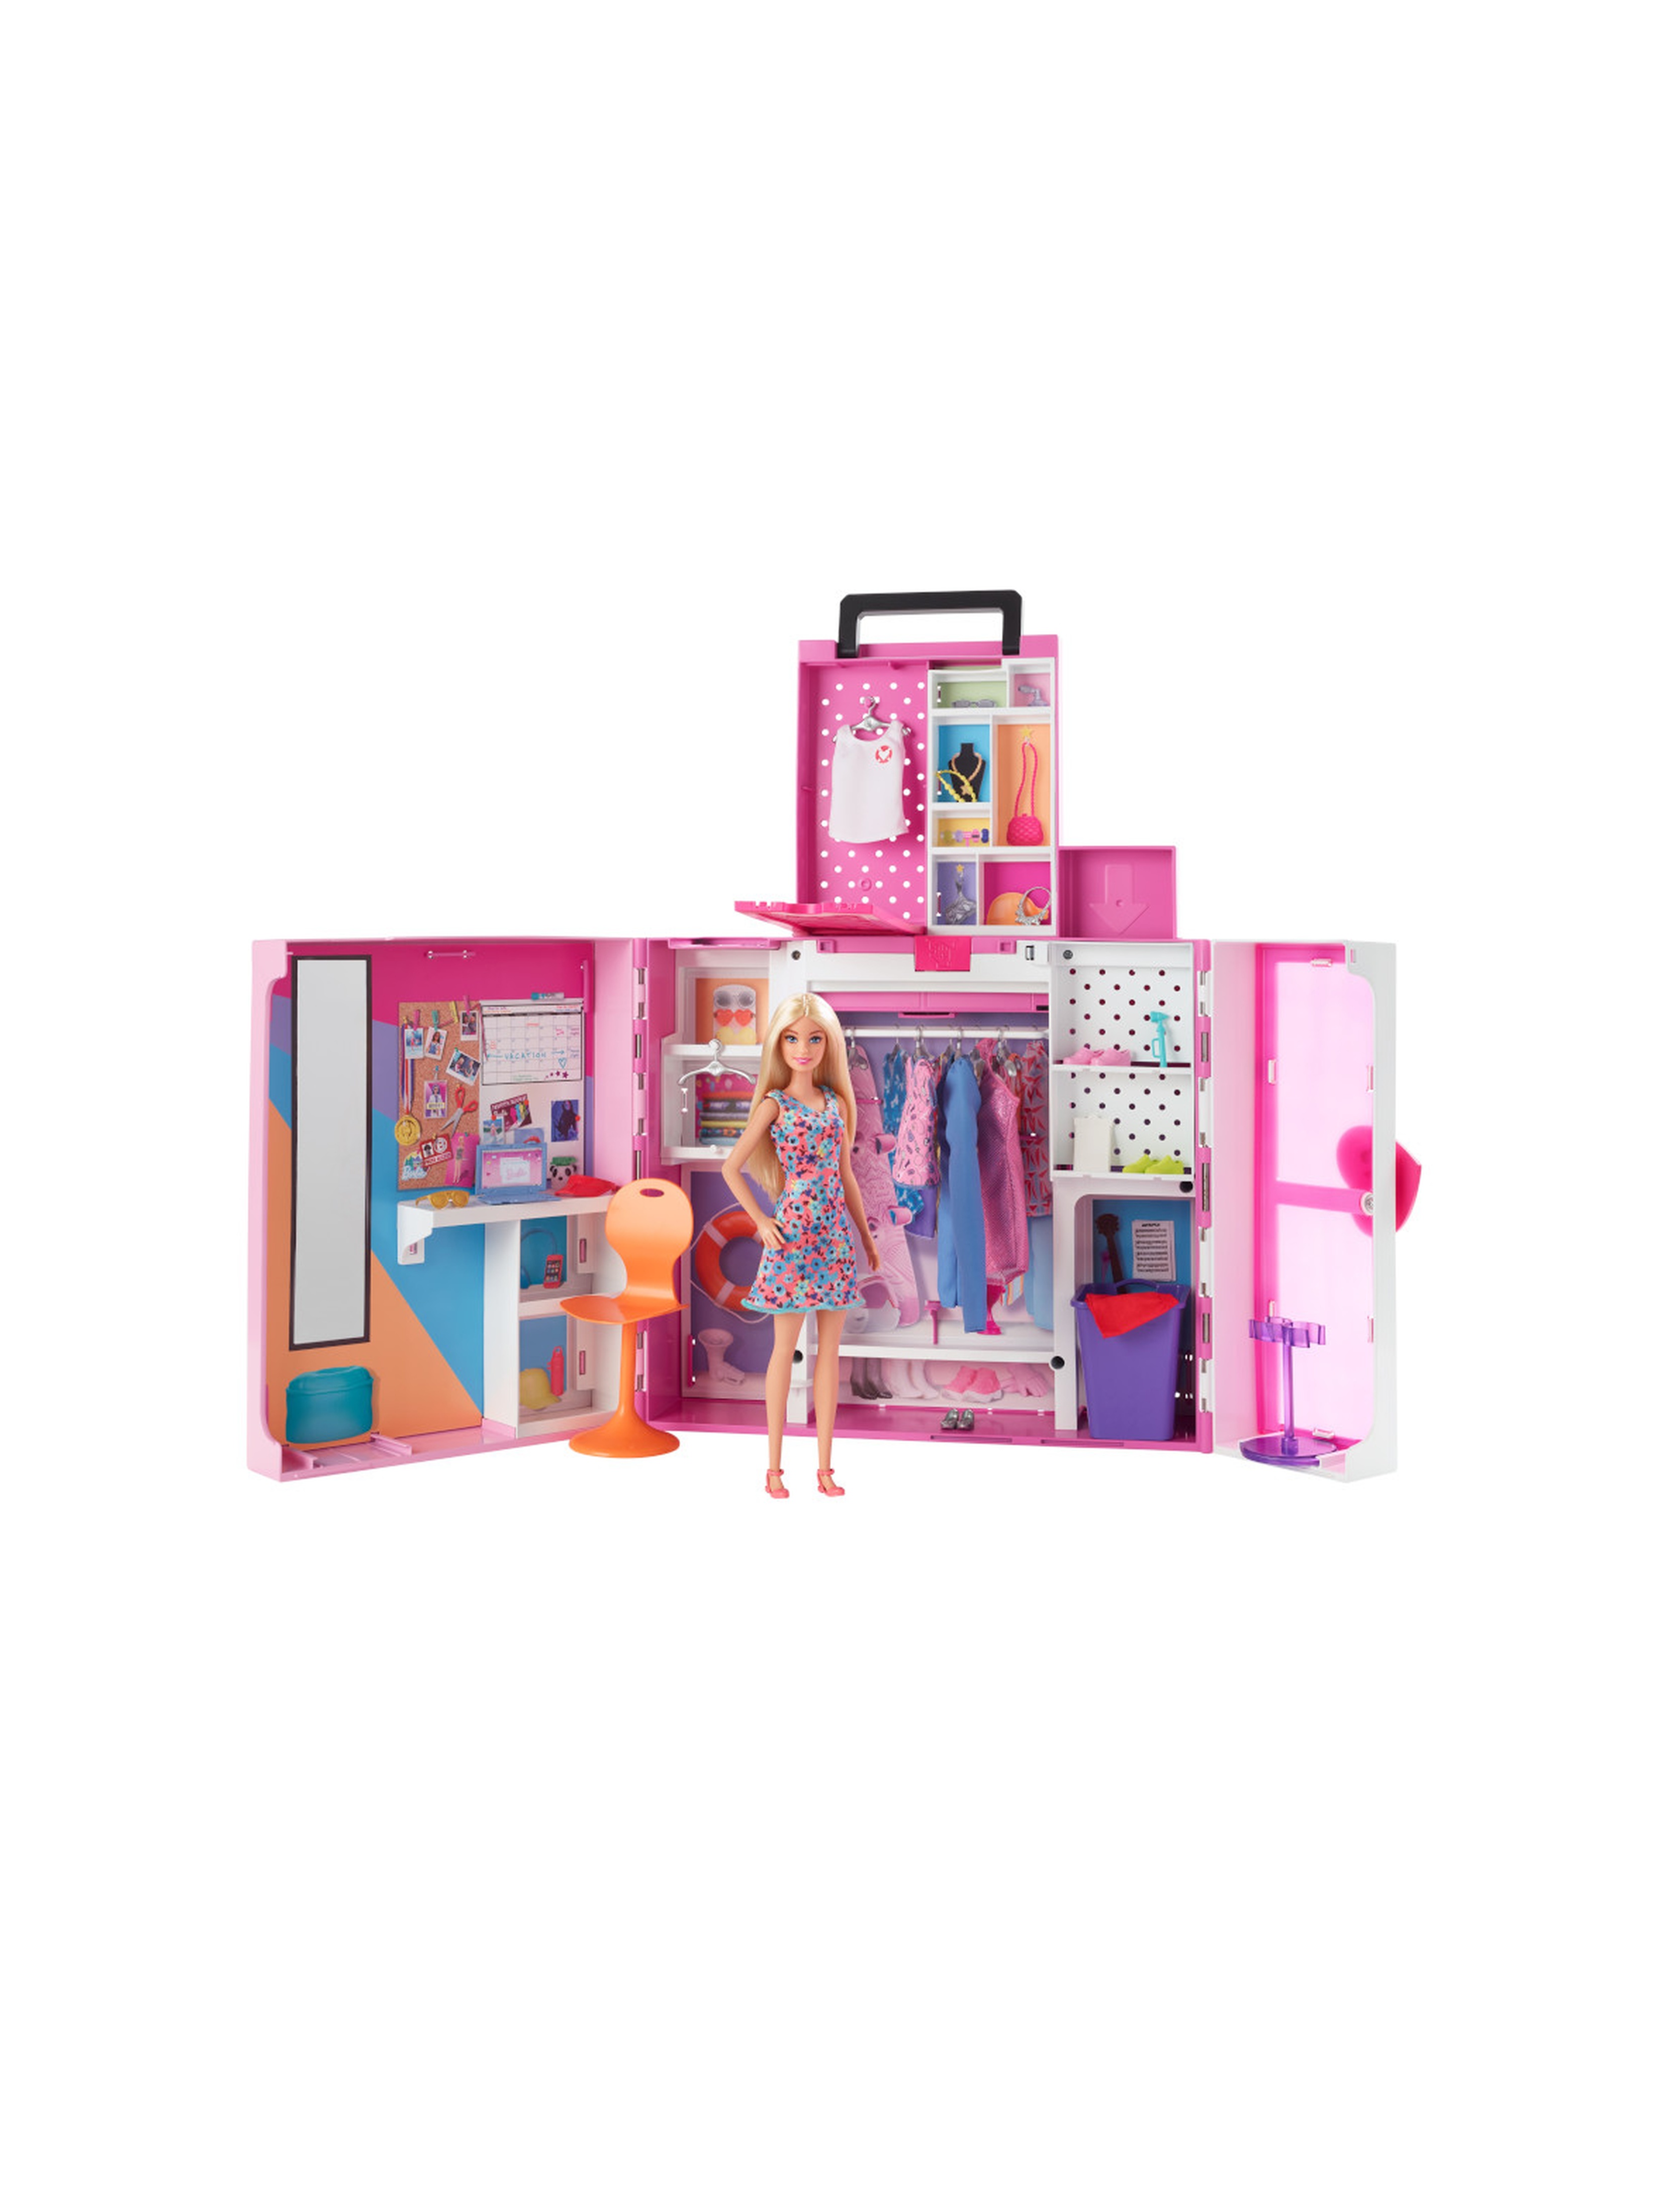 Barbie garderoba + lalka - zestaw